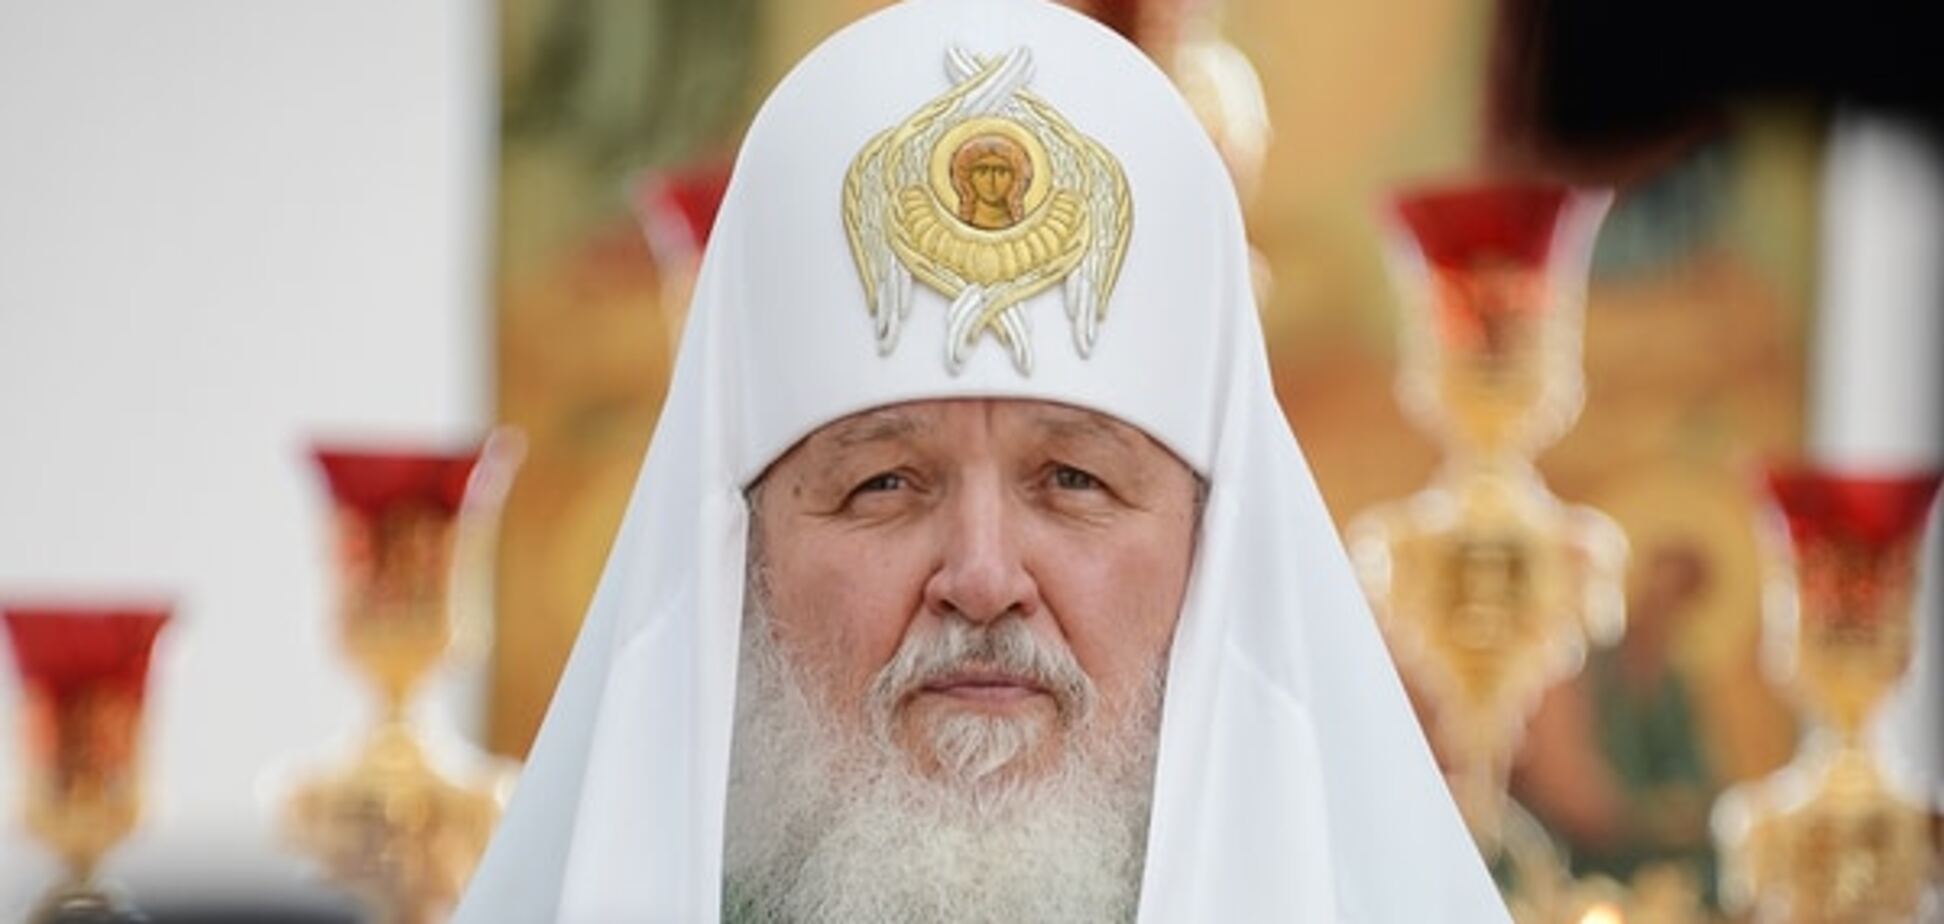 Скріпи: патріарх Кирило заговорив про 'моральність' і справедливість